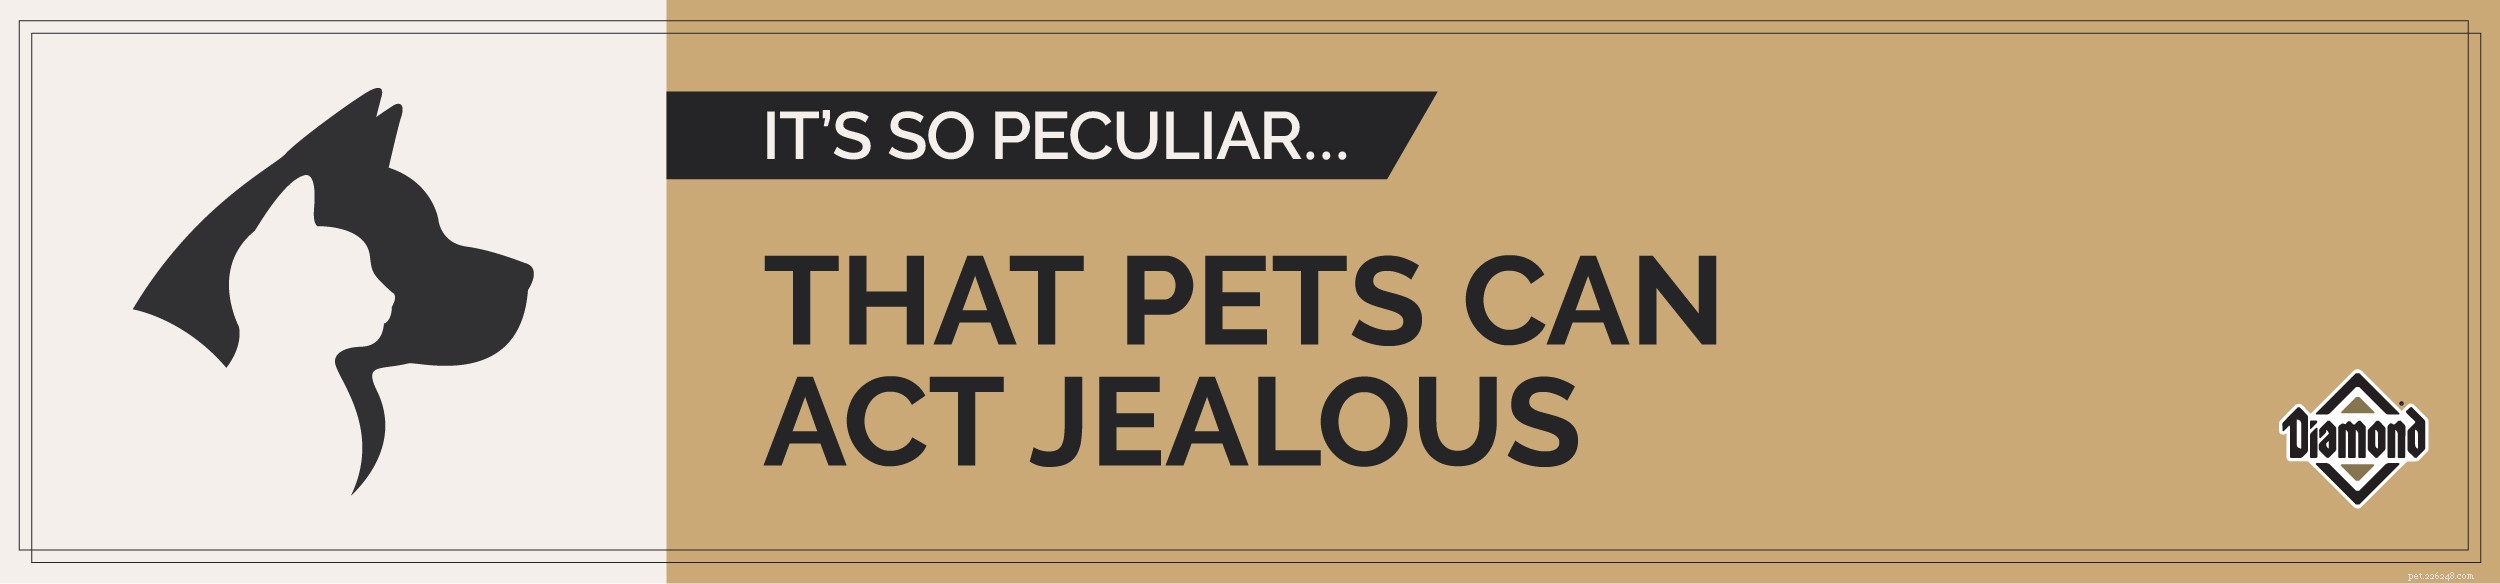 Fatti peculiari sugli animali:gli animali possono essere gelosi